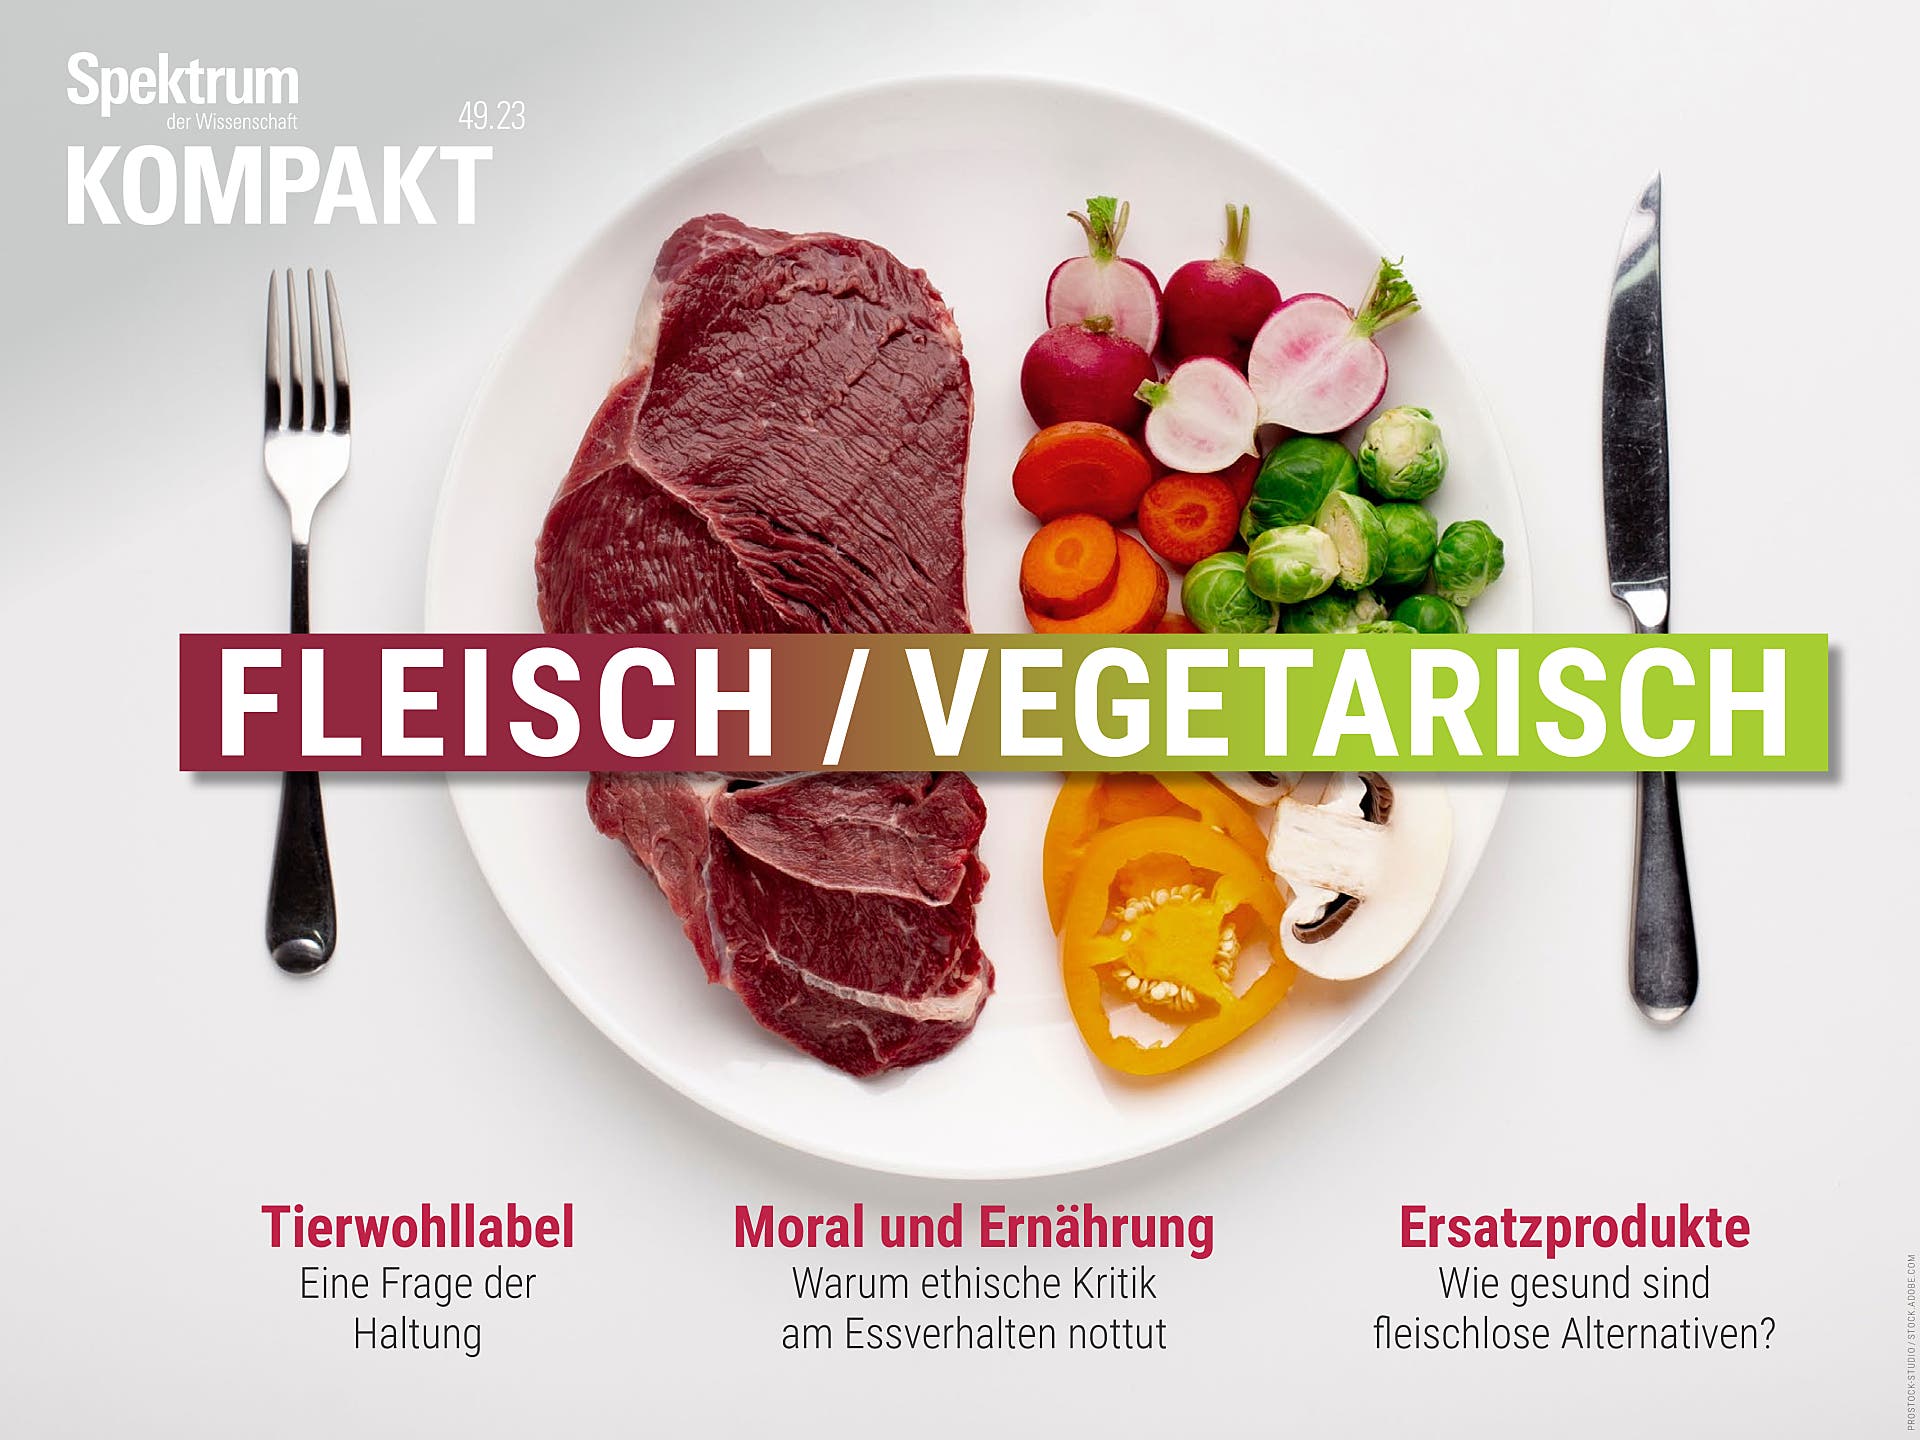 Fleisch / Vegetarisch